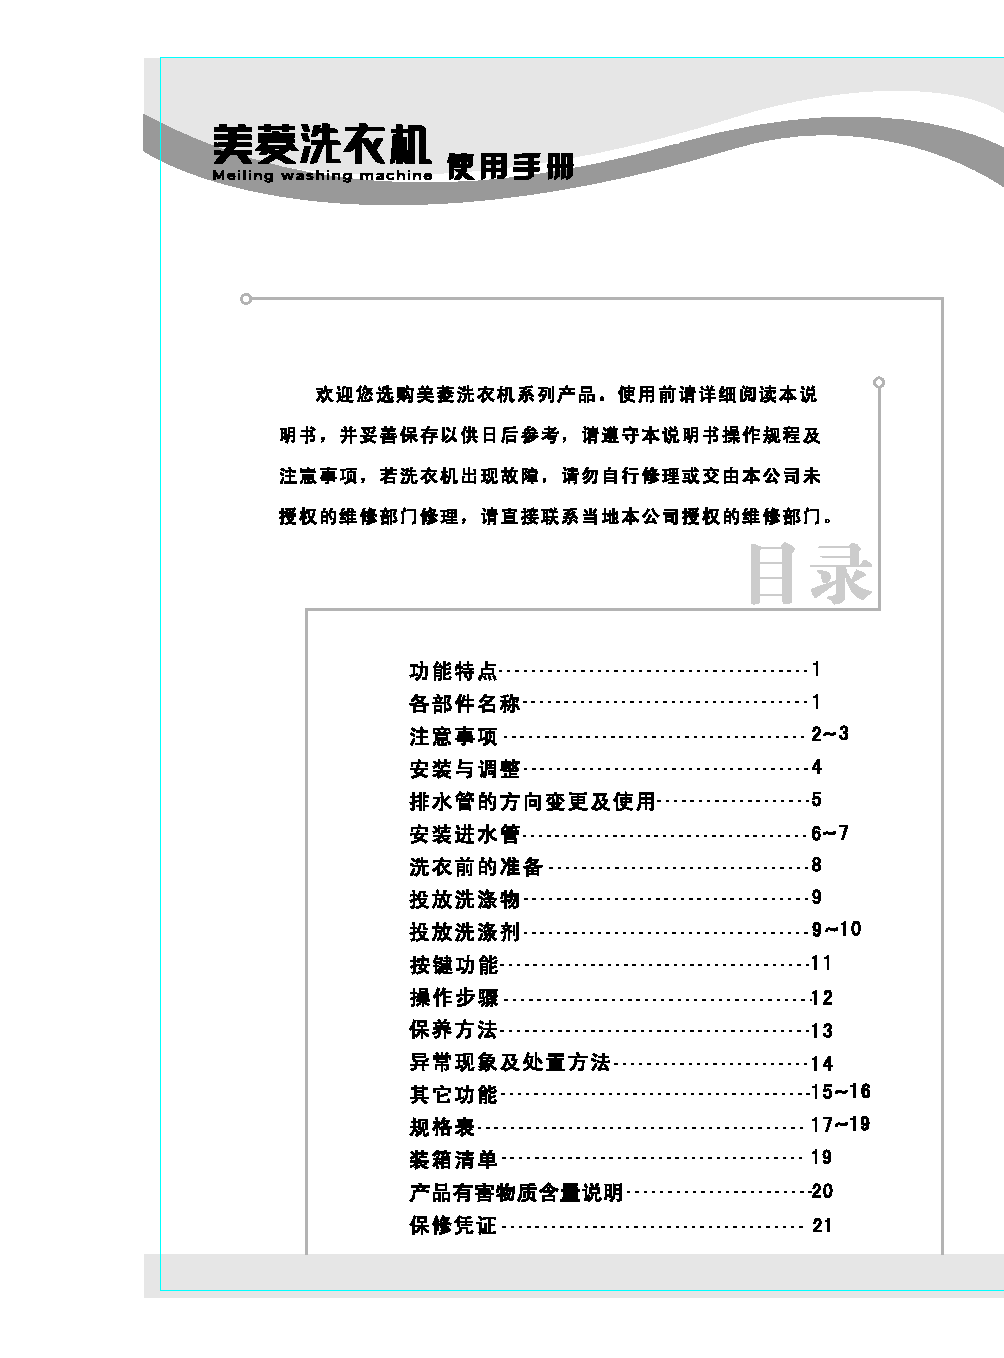 美菱 Meiling MB75-19ZLCGX, XQB65-19ZLCQ1 使用说明书 第1页